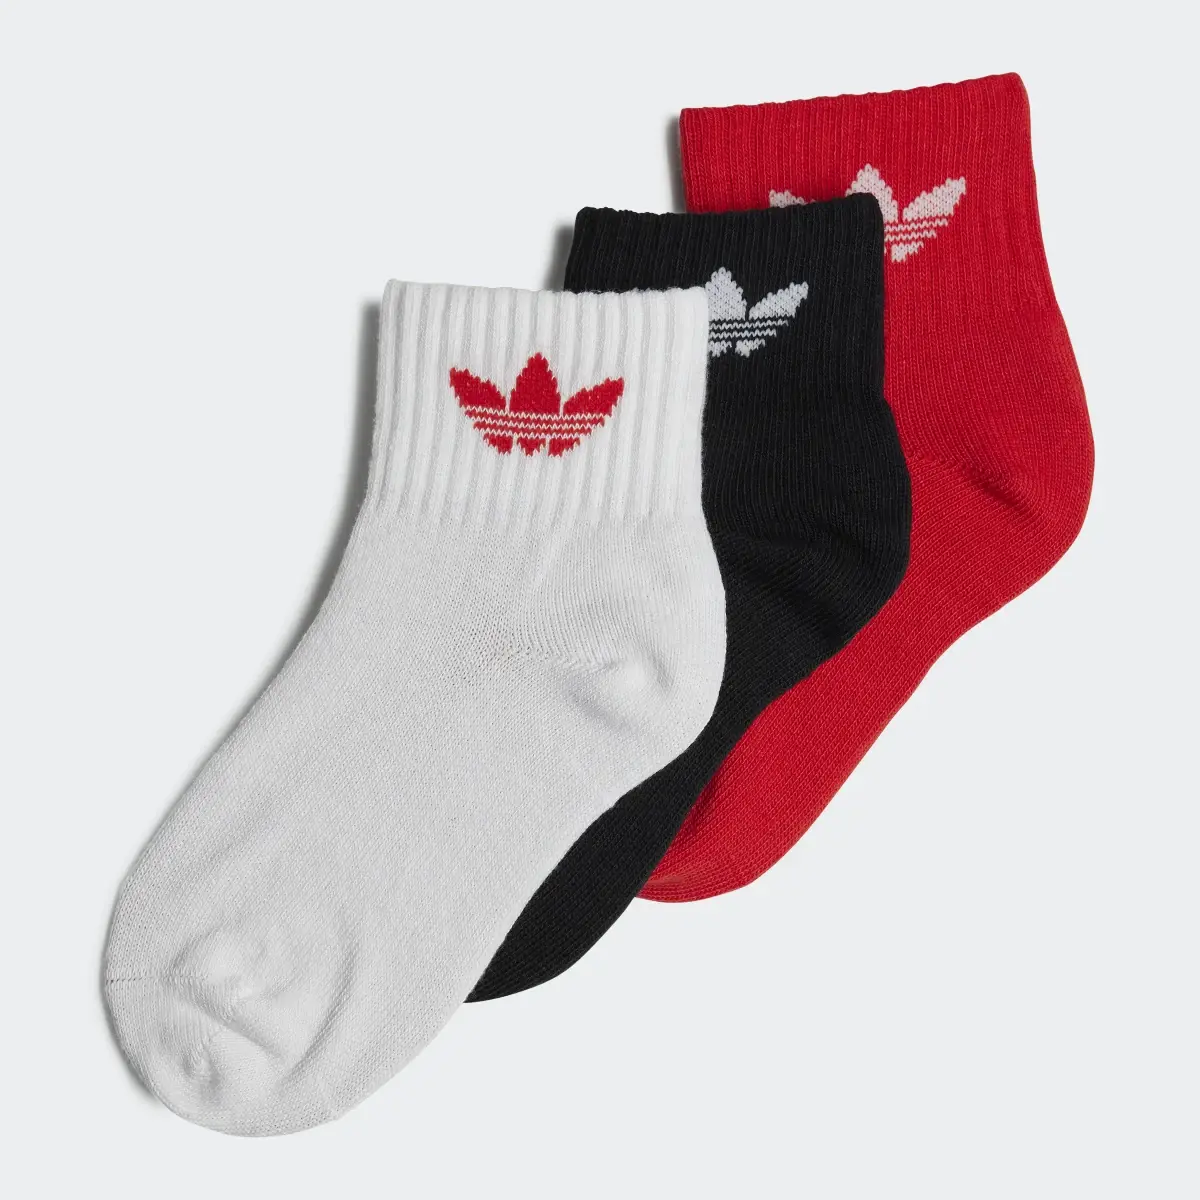 Adidas Mid-Ankle Socken, 3 Paar. 2